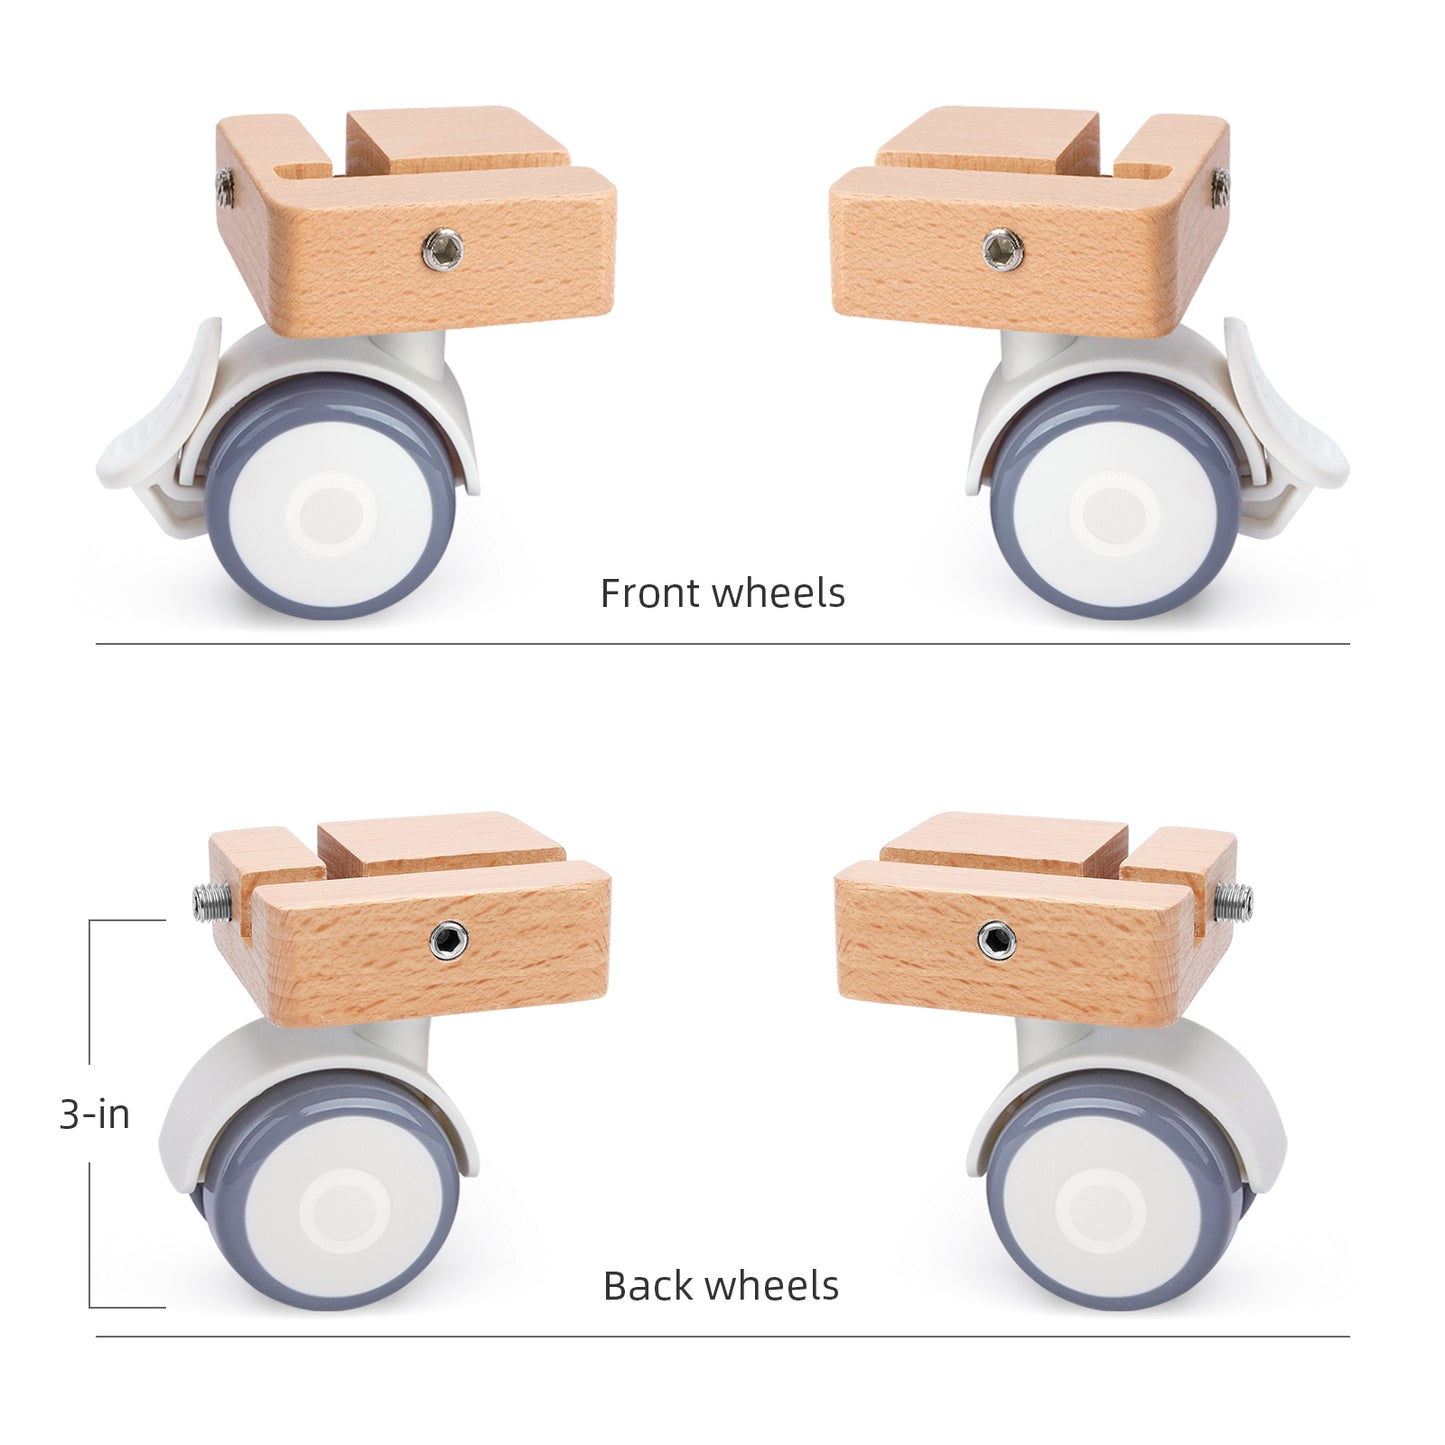 Niteangel Supplement Universal Wheel - Only Fits for Niteangel Vista Series - MDF Aspen Hamster Cage to Move Your Hamster Cage Simply (For Niteangel Vista - Oblique Opening Door)